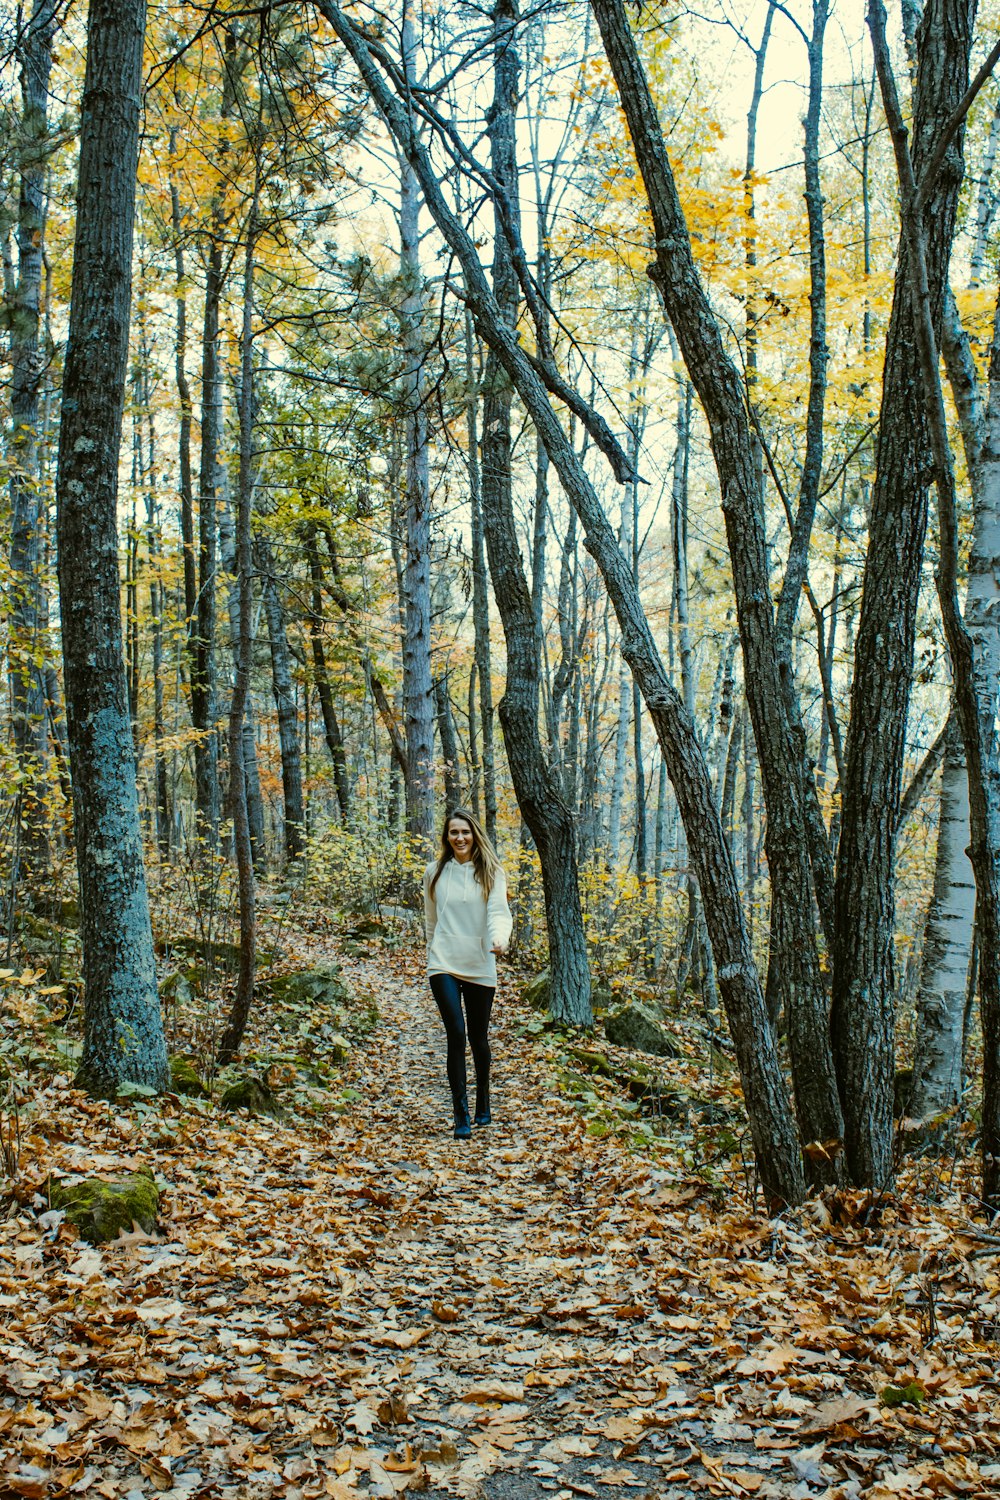 숲 속의 나뭇잎으로 덮인 길을 걷고 있는 여자